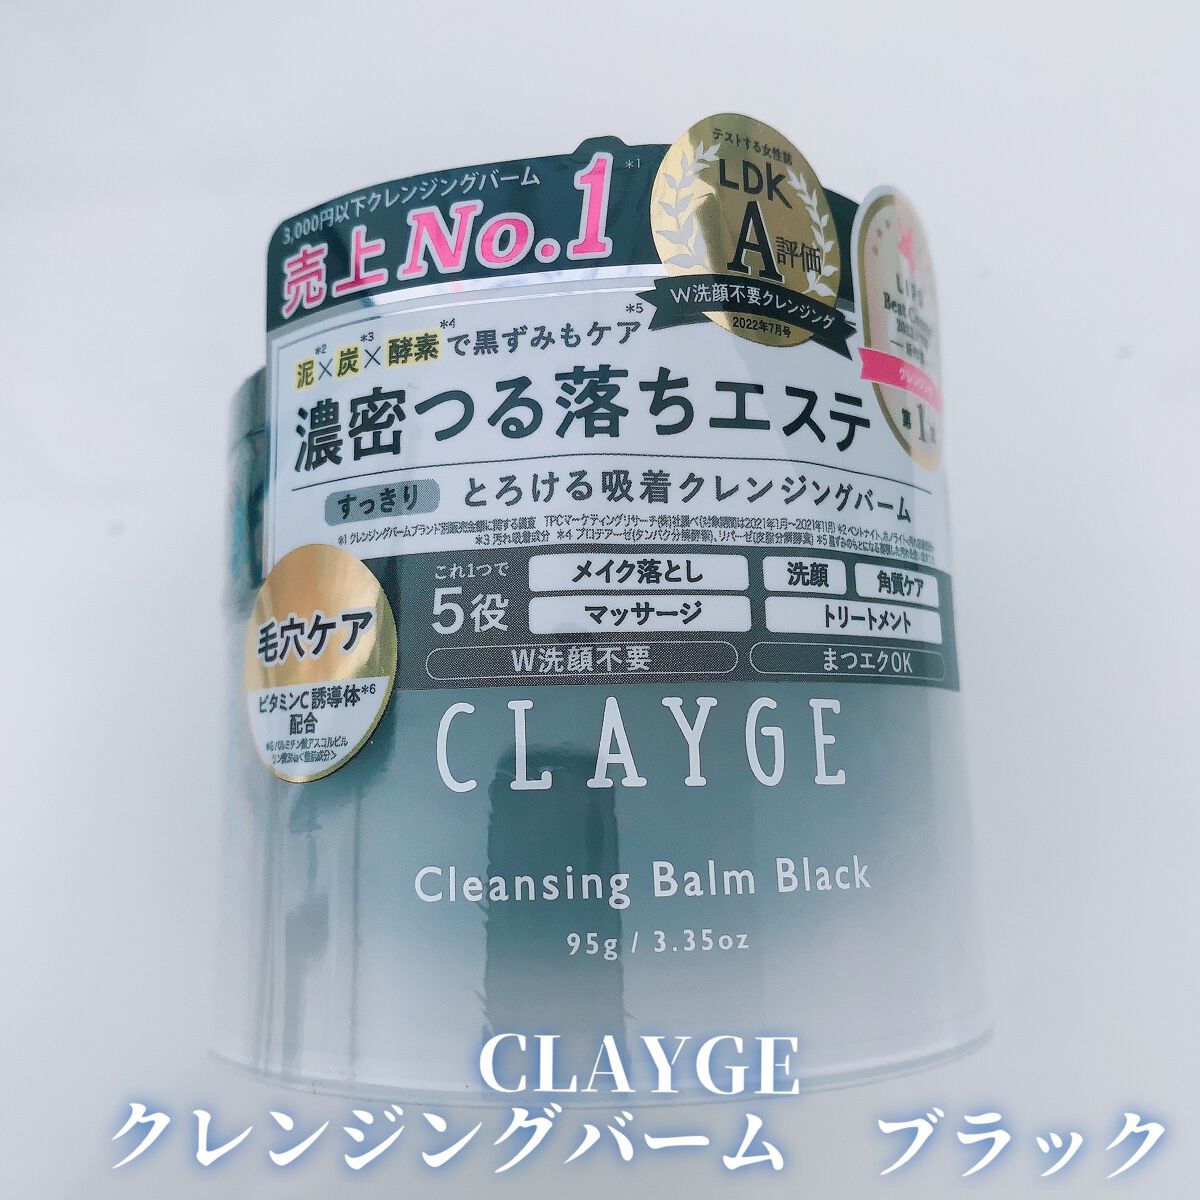 新品登場 CLAYGE クレンジングバーム ブラック 95g